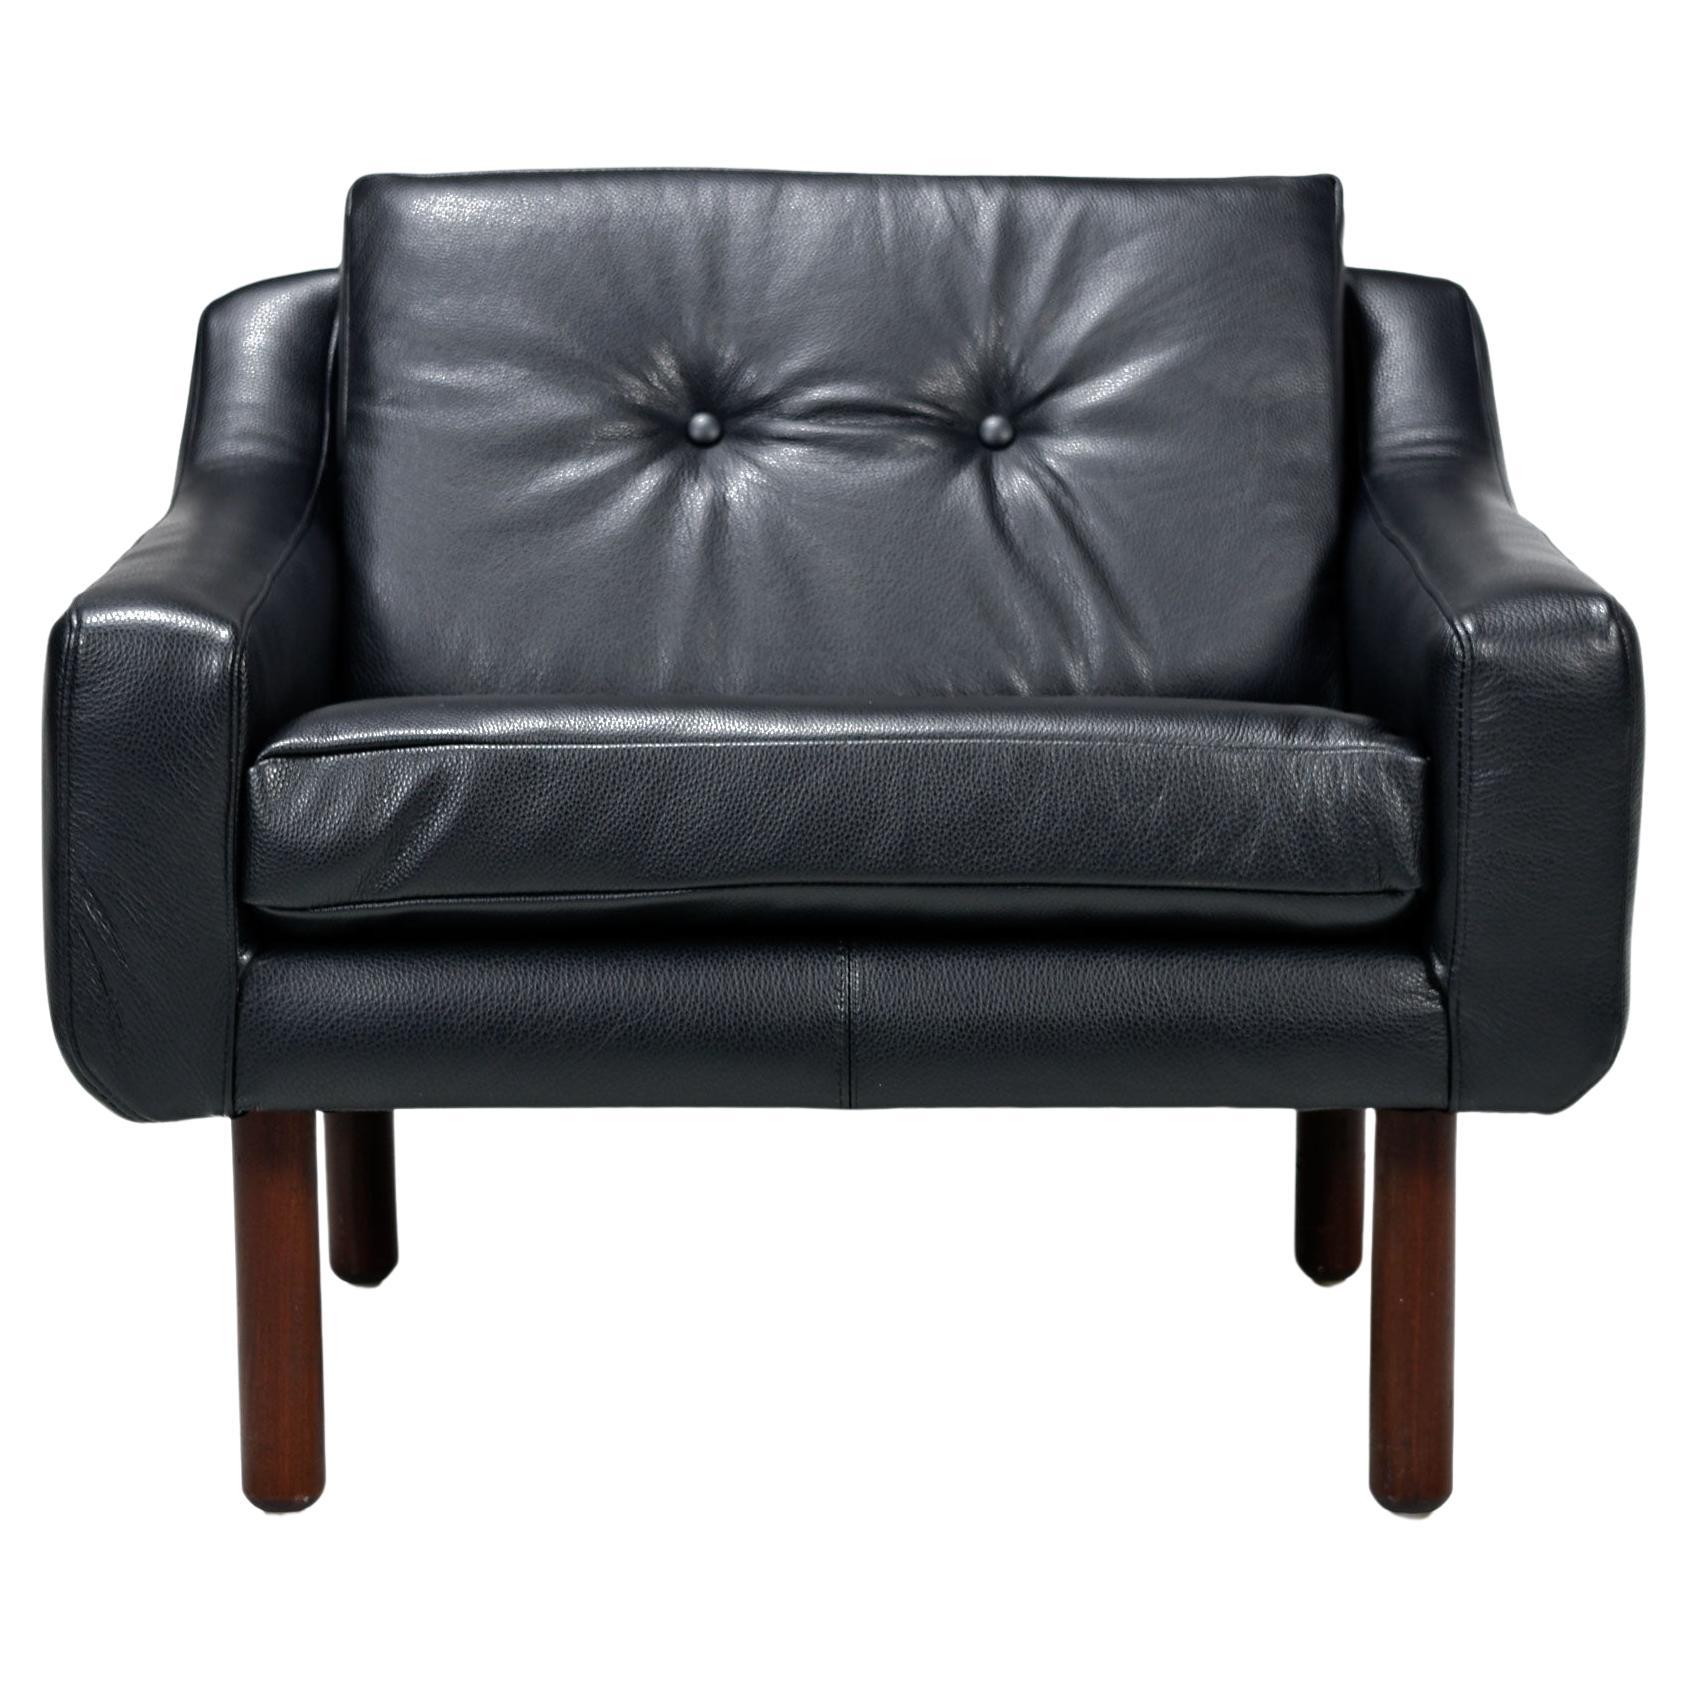 Vollständig restauriert mit neuem luxuriösen schwarzen Leder. Dieser Mid-Century Modern Sessel hat keine Kennzeichnung, aber er ist eindeutig im Stil von Frits Henningsen und Svend Skipper aus den 1960er Jahren. Dieser Sessel mit niedriger